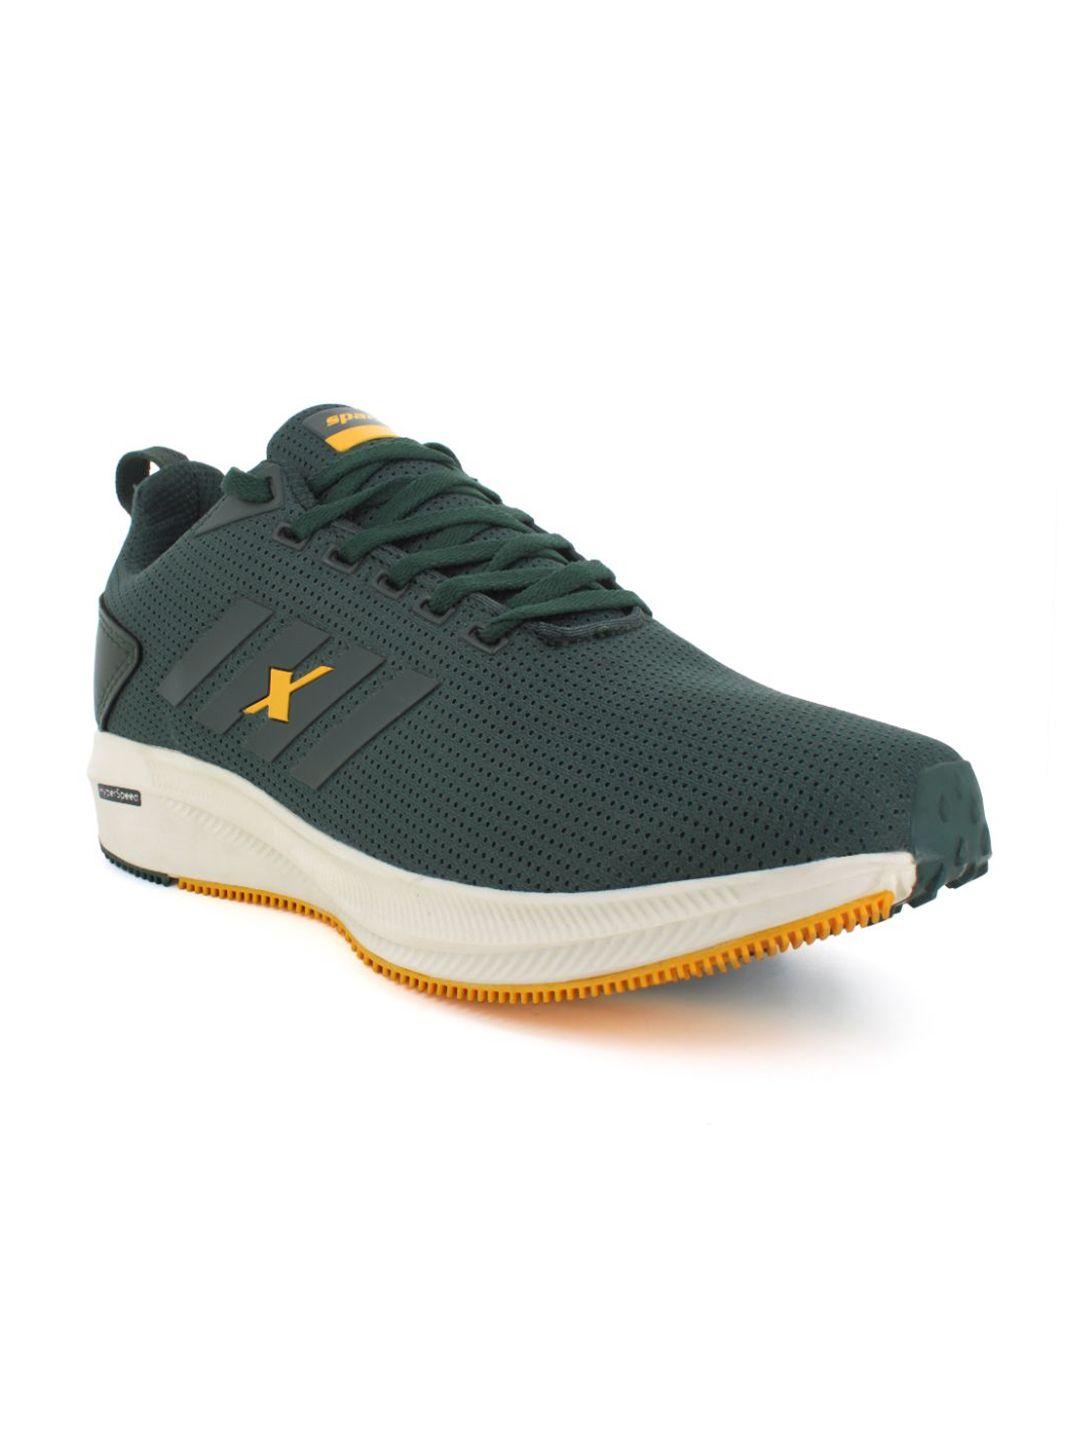 sparx-men-green-mesh-running-shoes